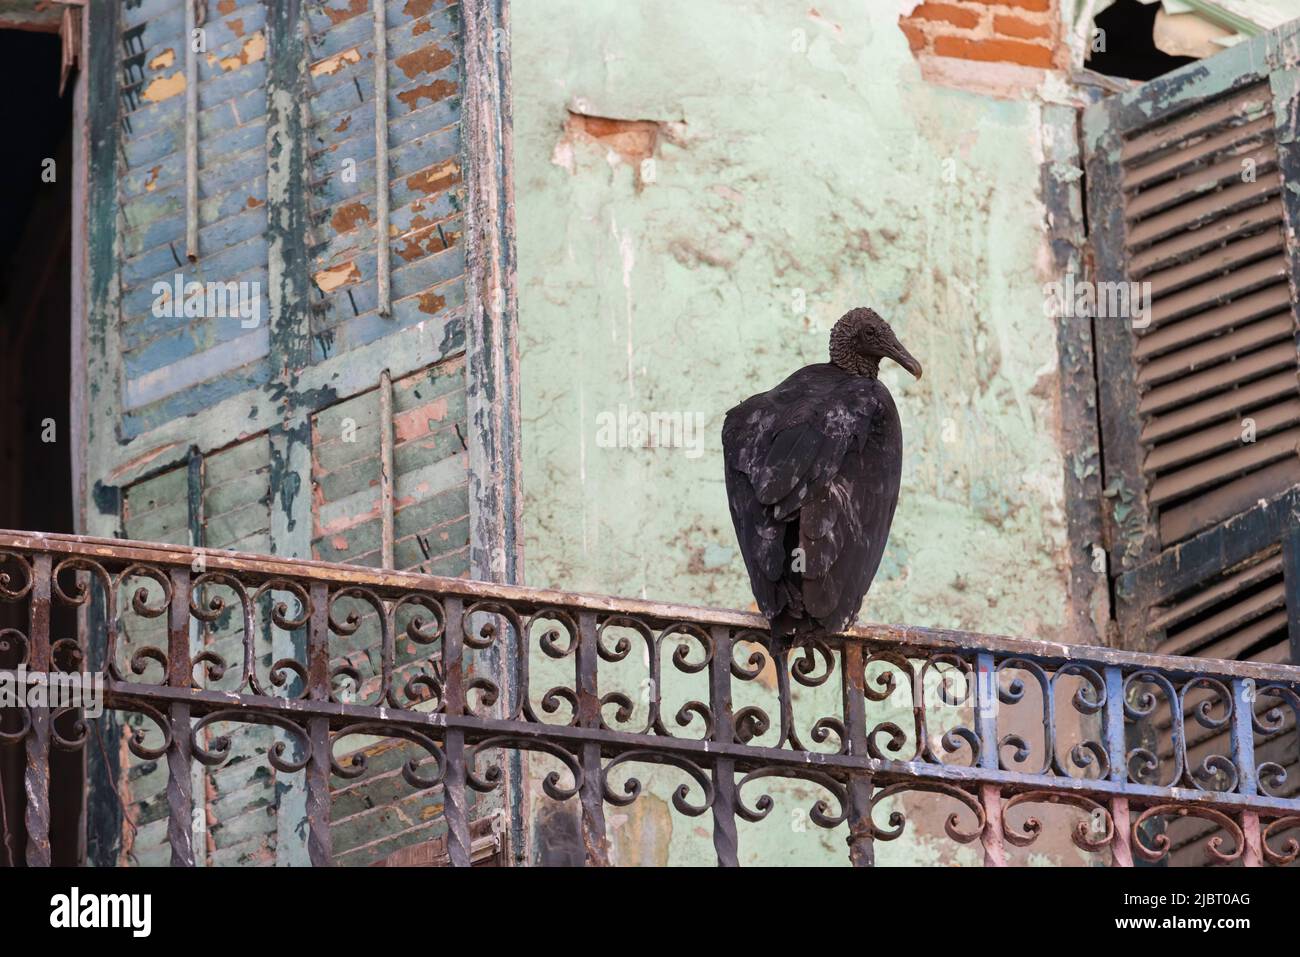 Panama, Panama City, Schwarzgeier (Coragyps atratus), der auf dem Balkon eines verlassenen Hauses im historischen Viertel Casco Viejo ruht, das von der UNESCO zum Weltkulturerbe erklärt wurde Stockfoto